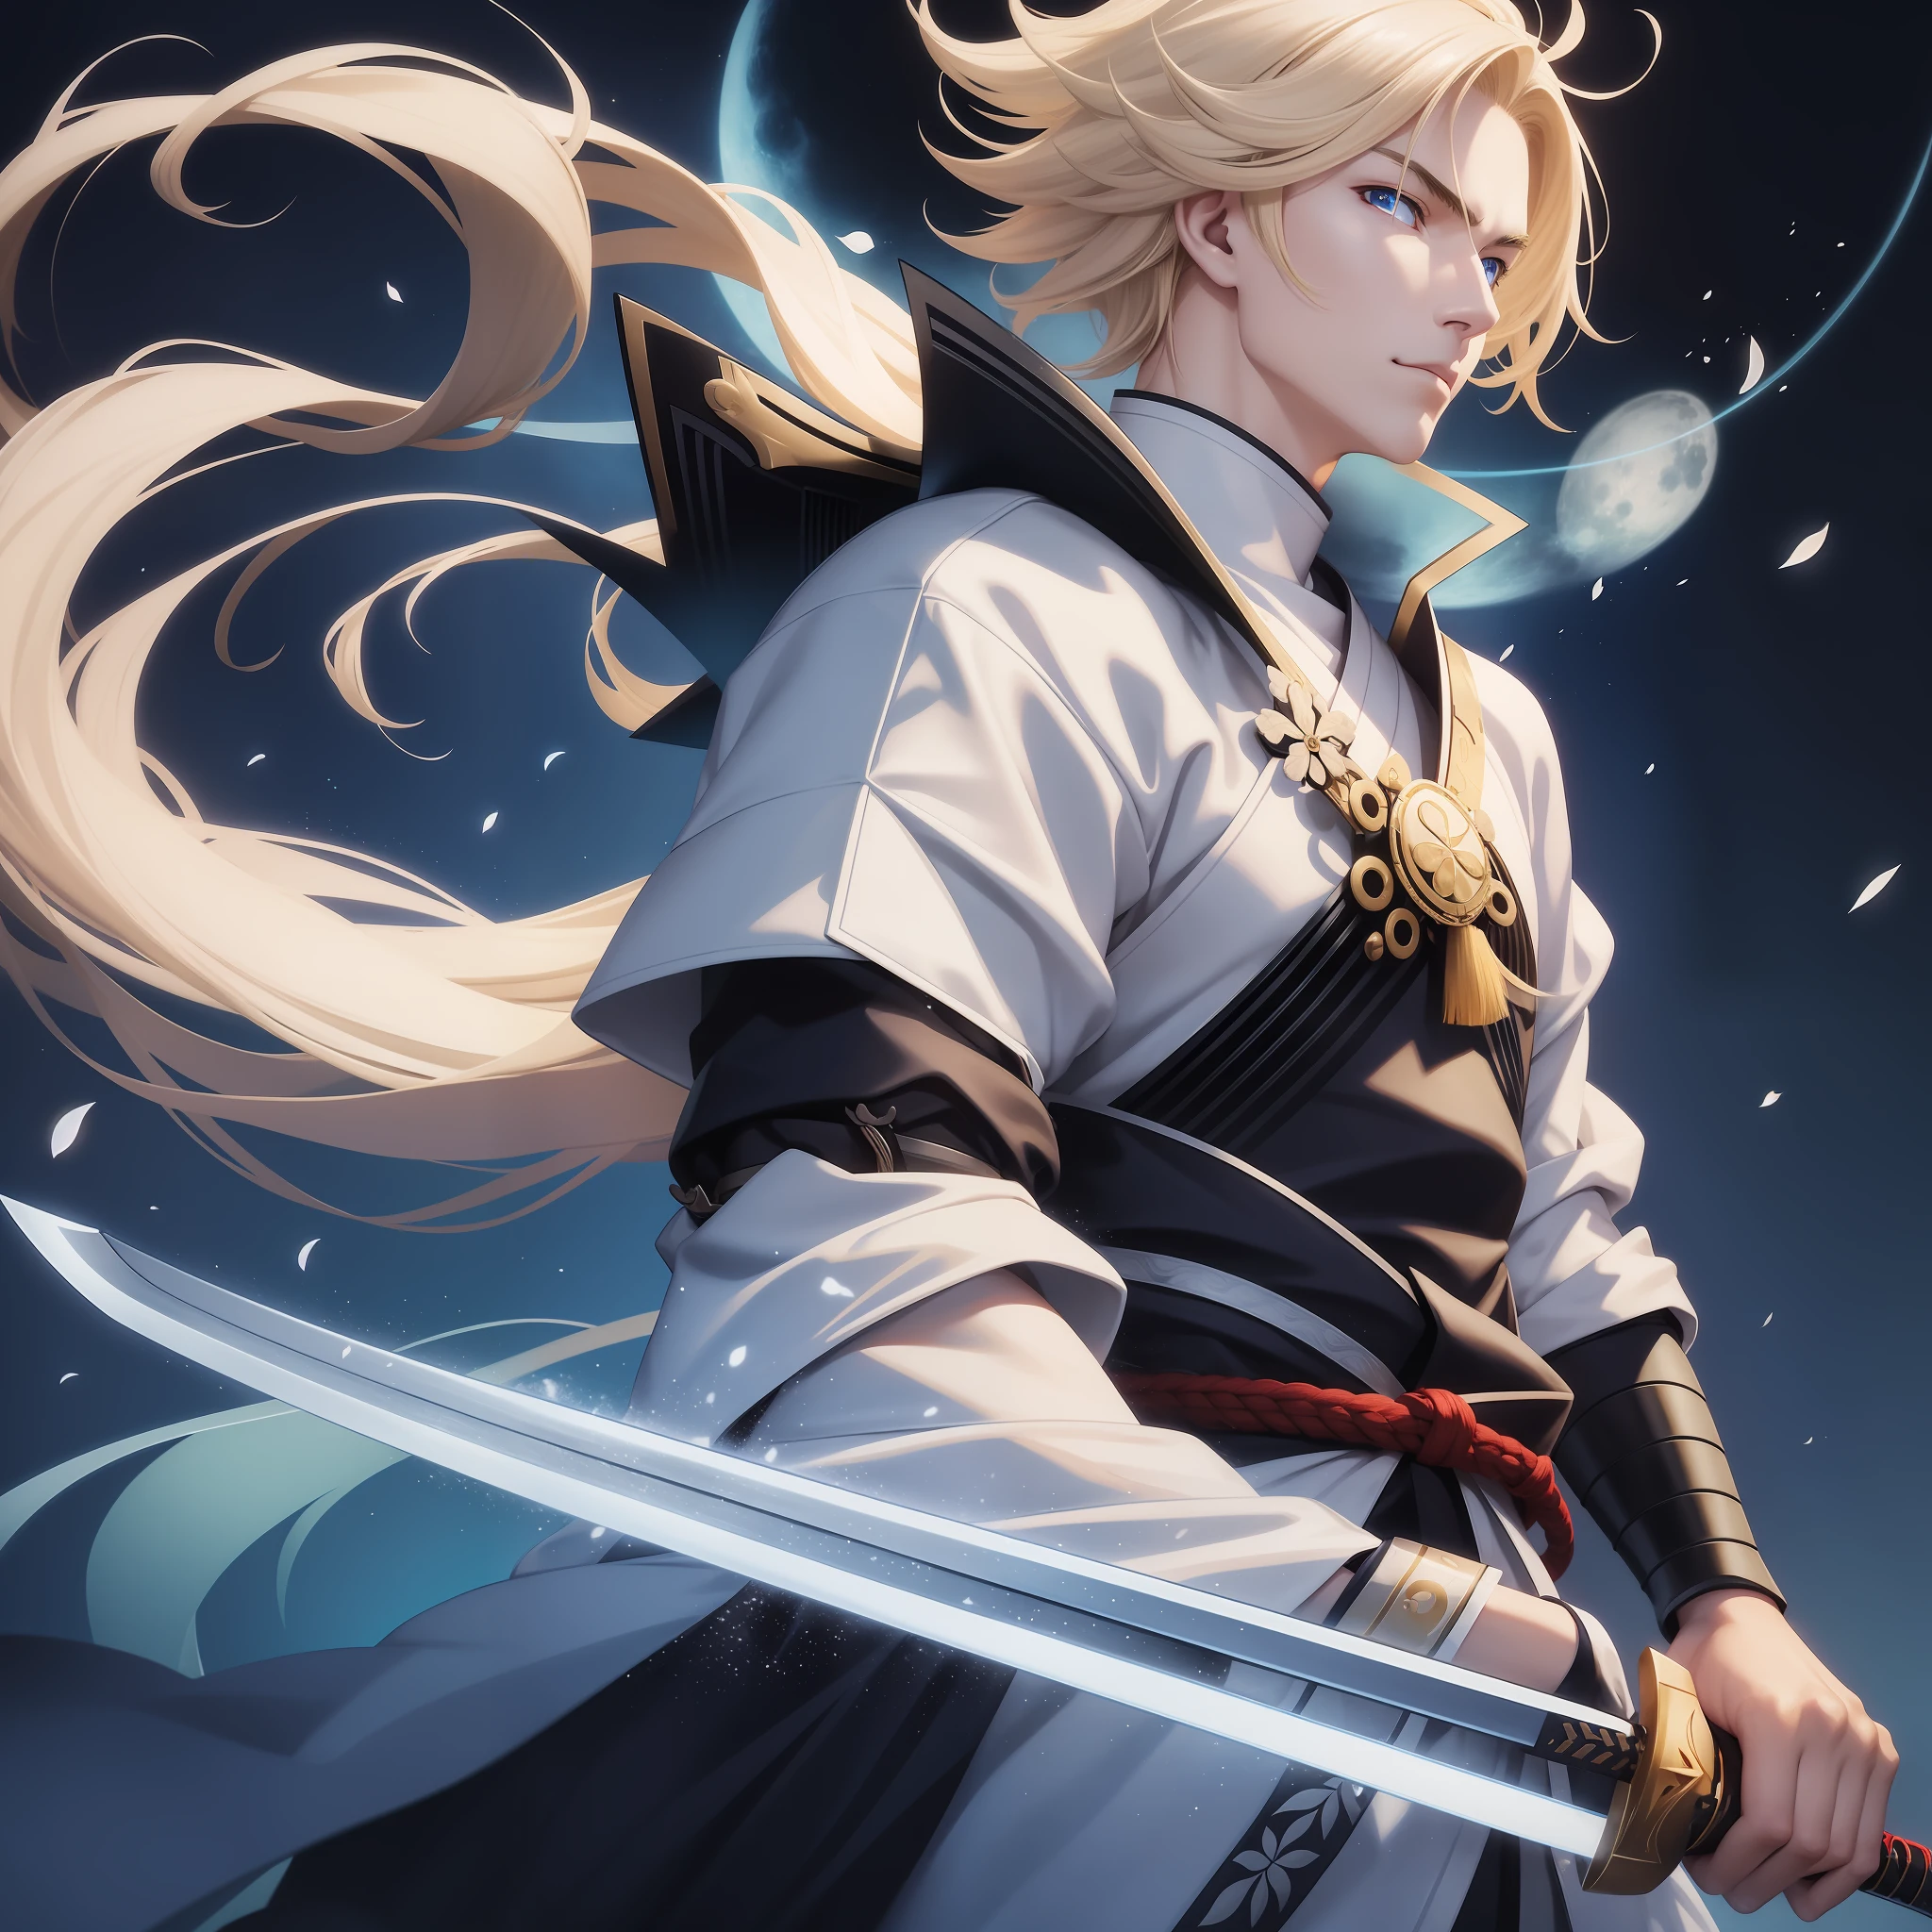 Samurai masculino,branco,com cabelo loiro,com uma espada de raios,com olhos azuis,à noite,lua cheia,alta definição,melhor foto,papel de parede,fotografia de anime,desenho,alta definição